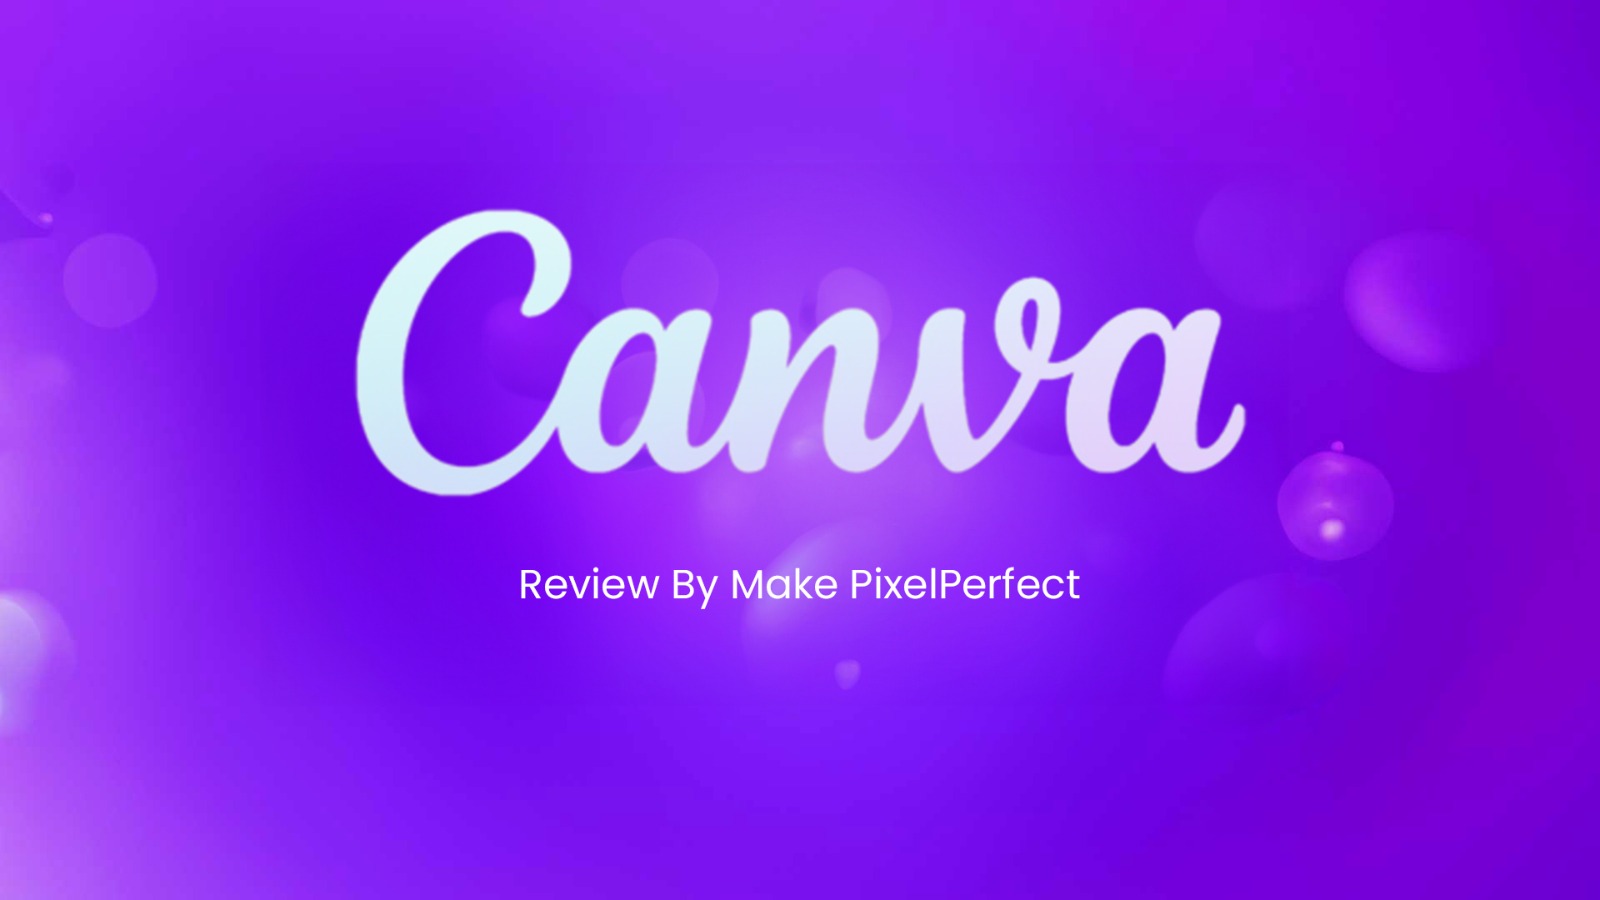 CANVA Review www.makepixelperfect.com